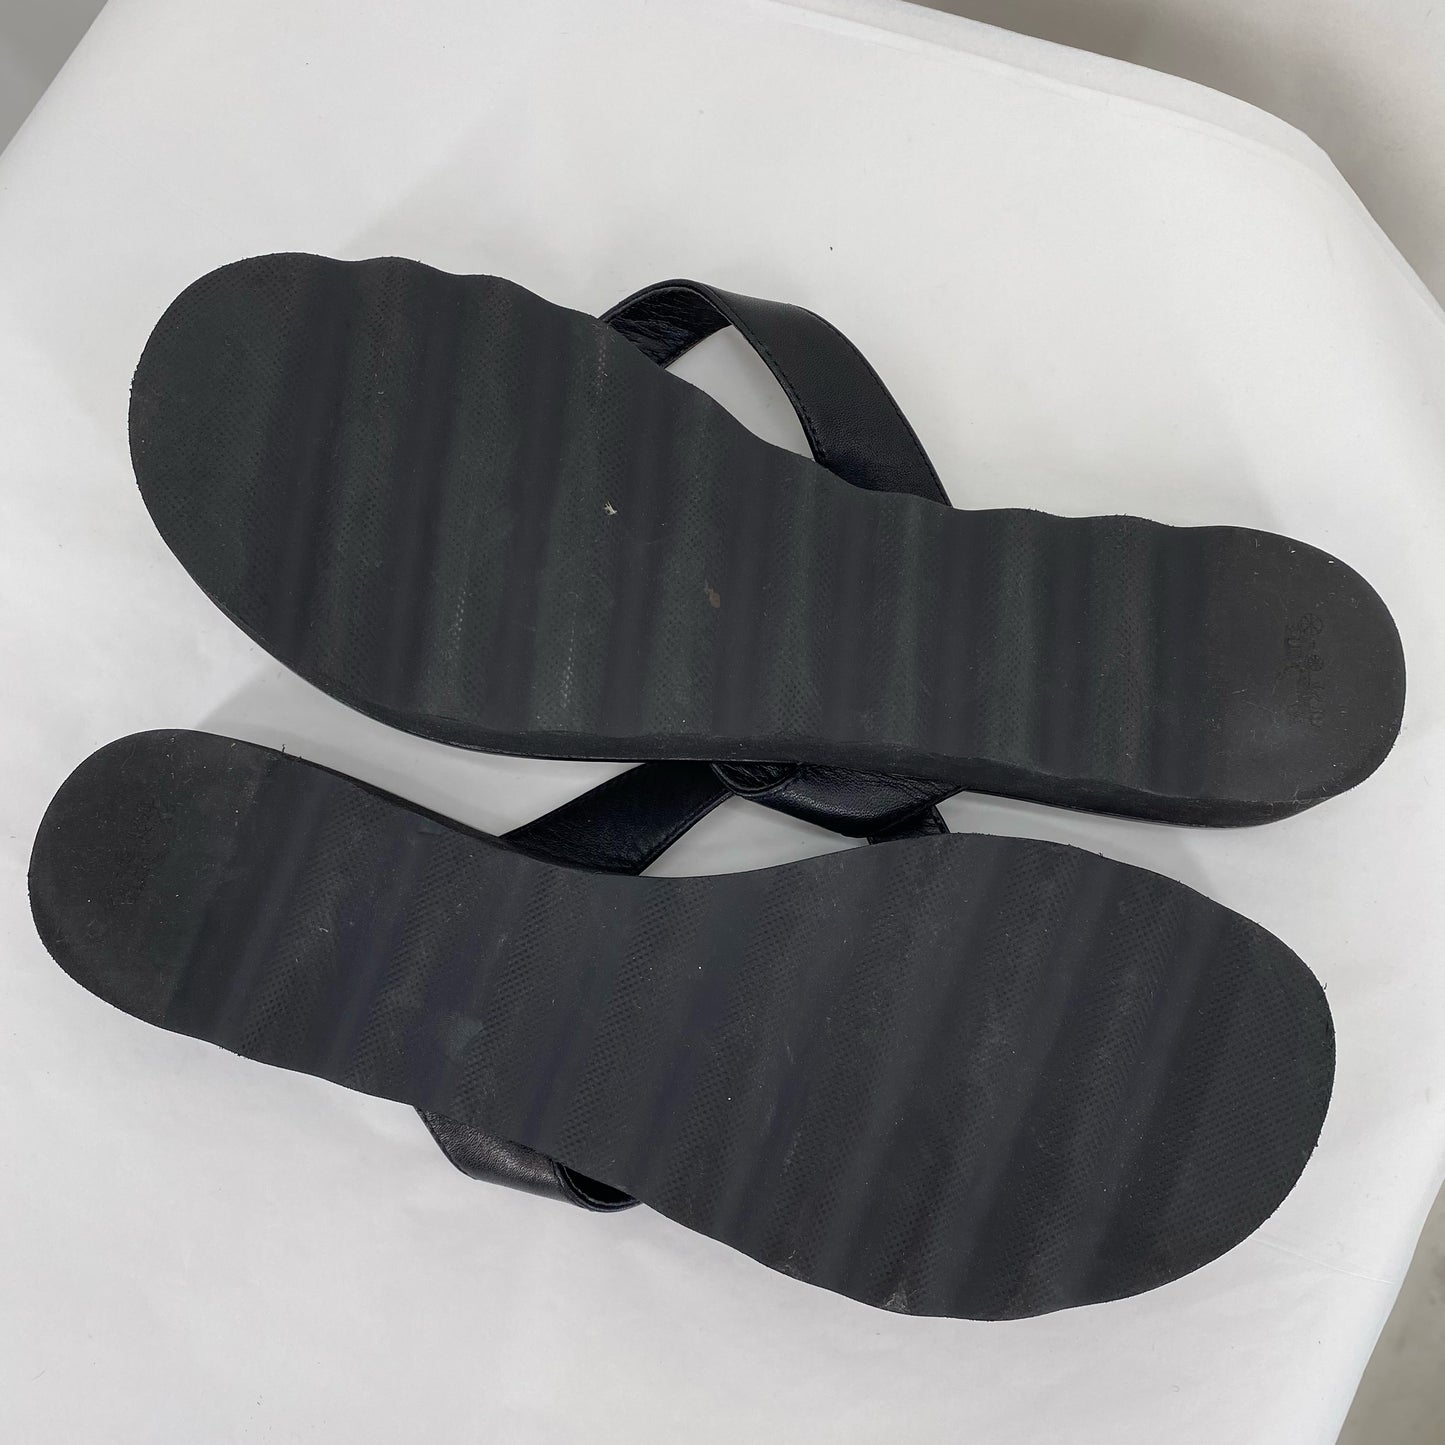 Black W Shoe Size 9 COACH Sandals